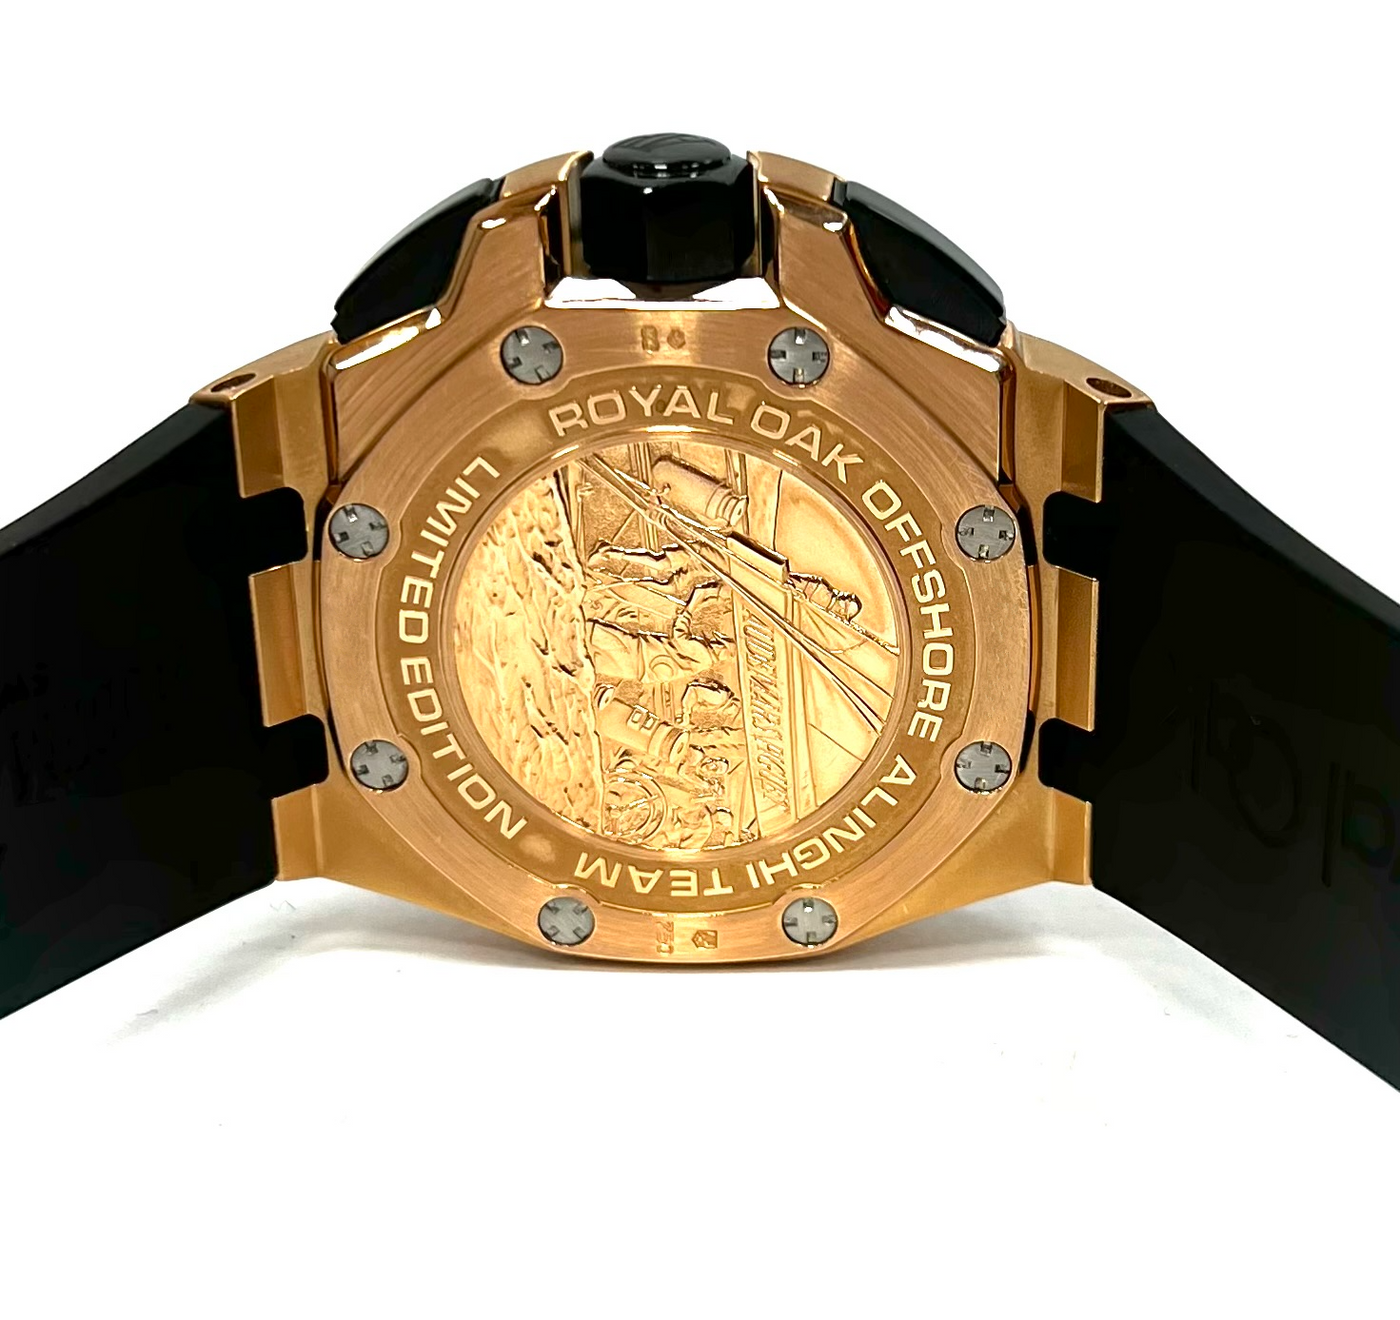 Audemars Piguet Royal Oak Offshore Chronograph Limited Edition Alinghi Rose Gold